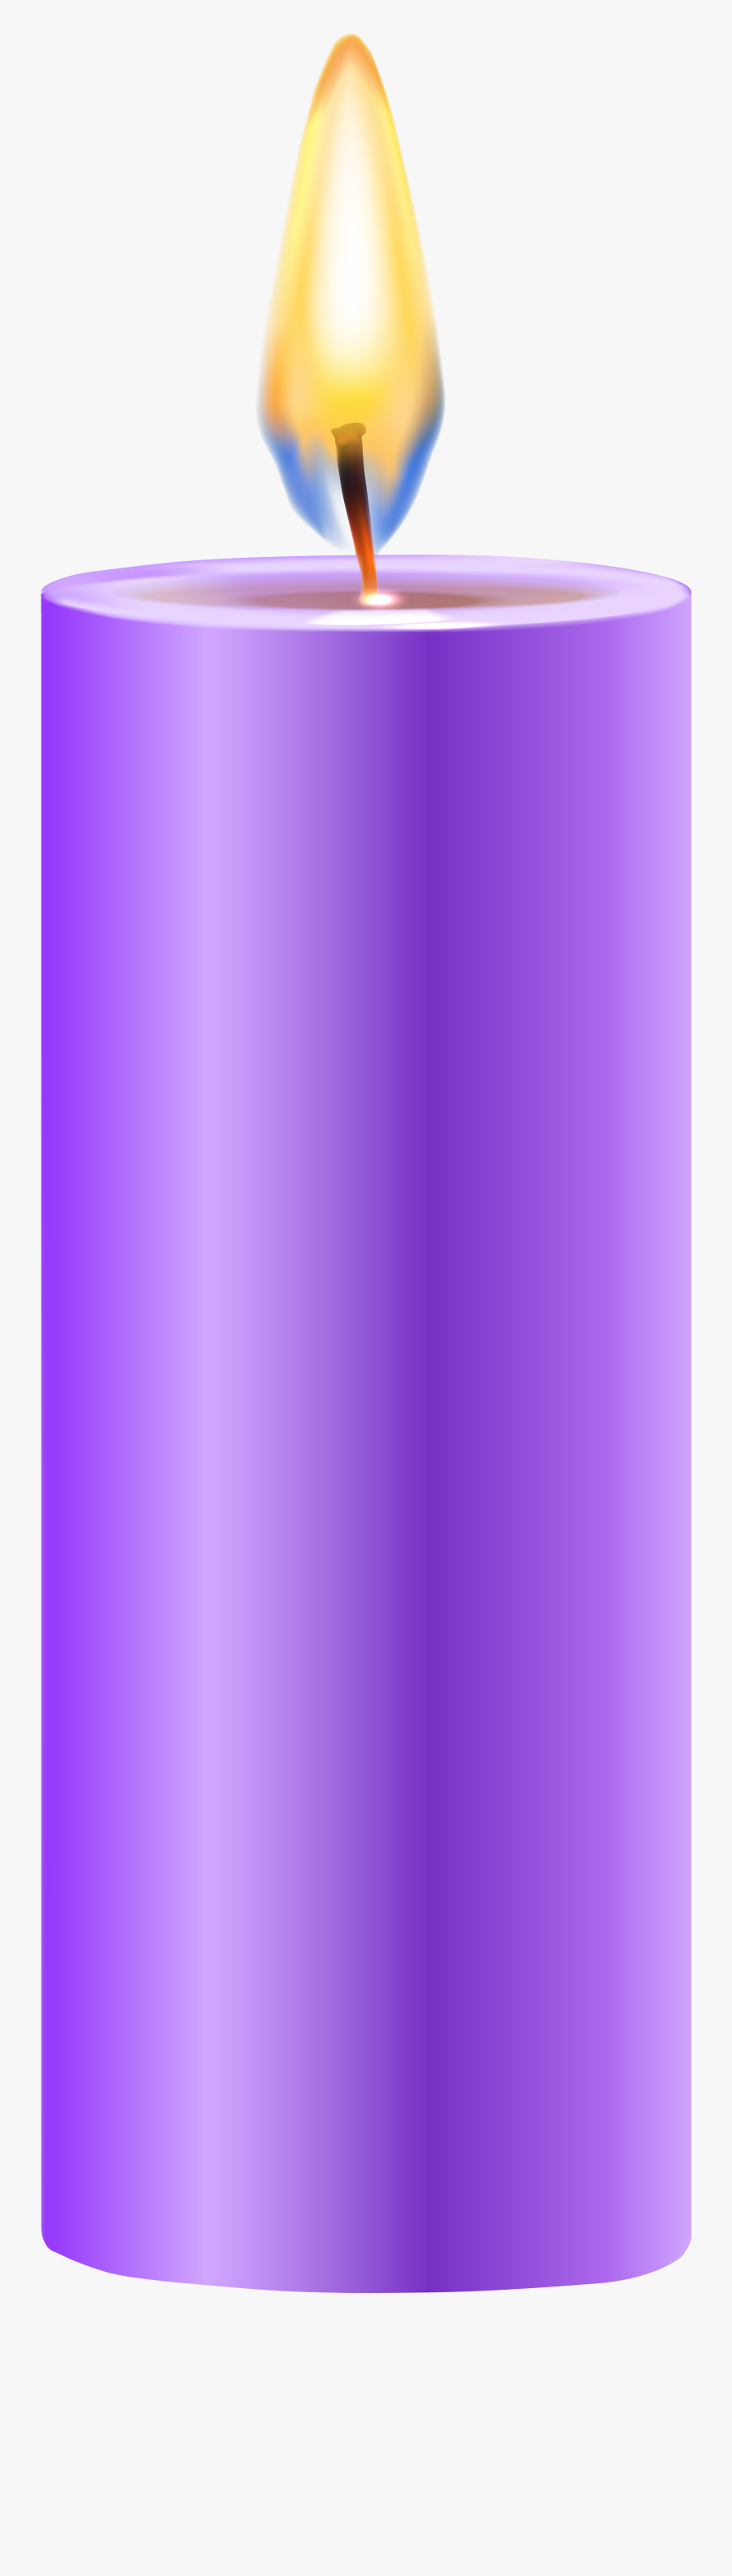 Candles Clipart Purple - Violet Candle Clipart, Transparent Clipart